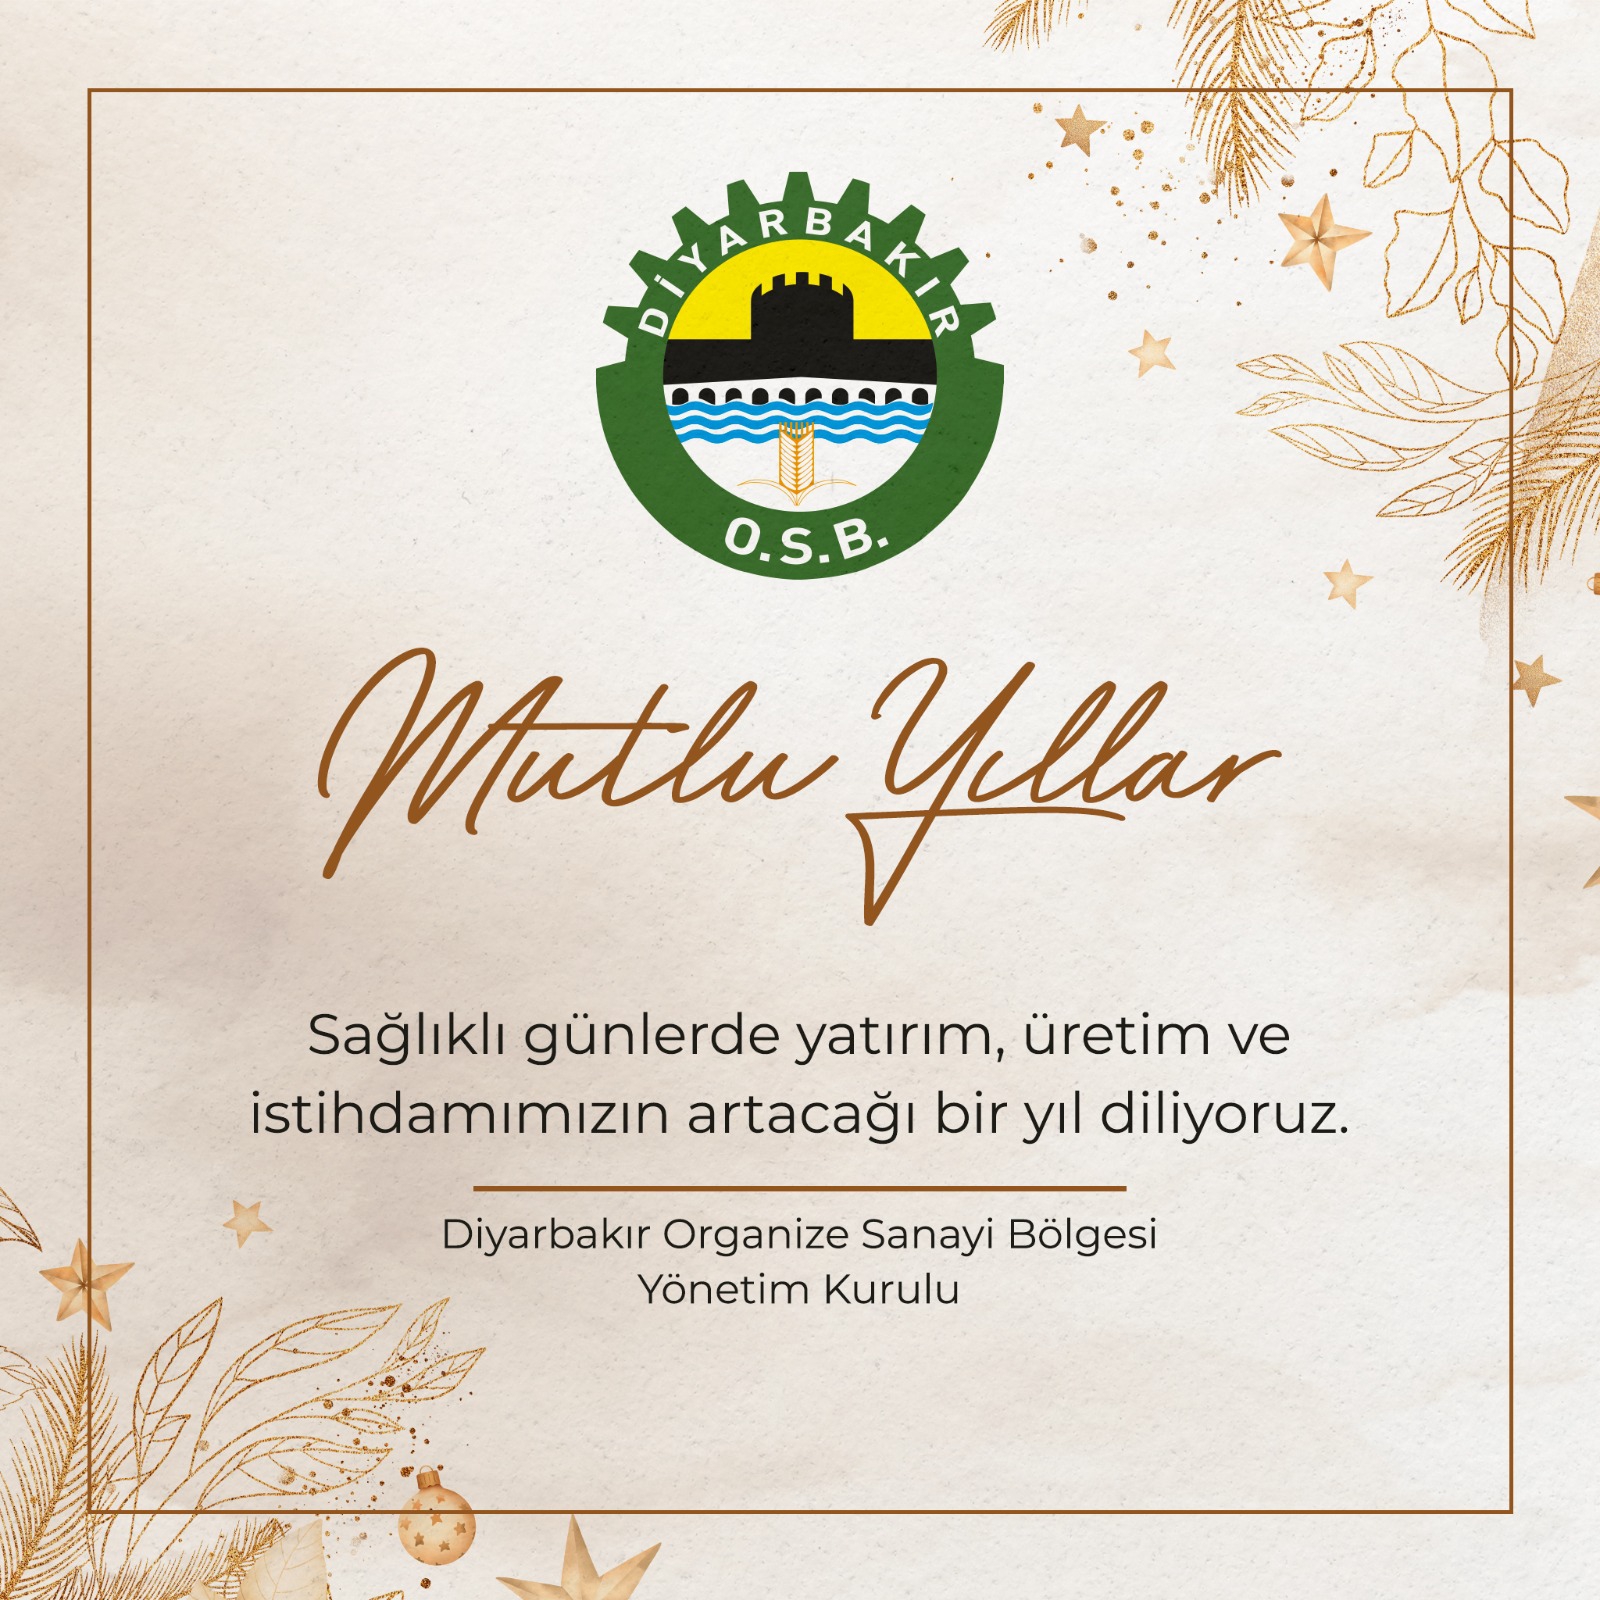 Diyarbakır Organize Sanayi Bölgesi Yönetim Kurulu'ndan Yeni Yıl Mesajı